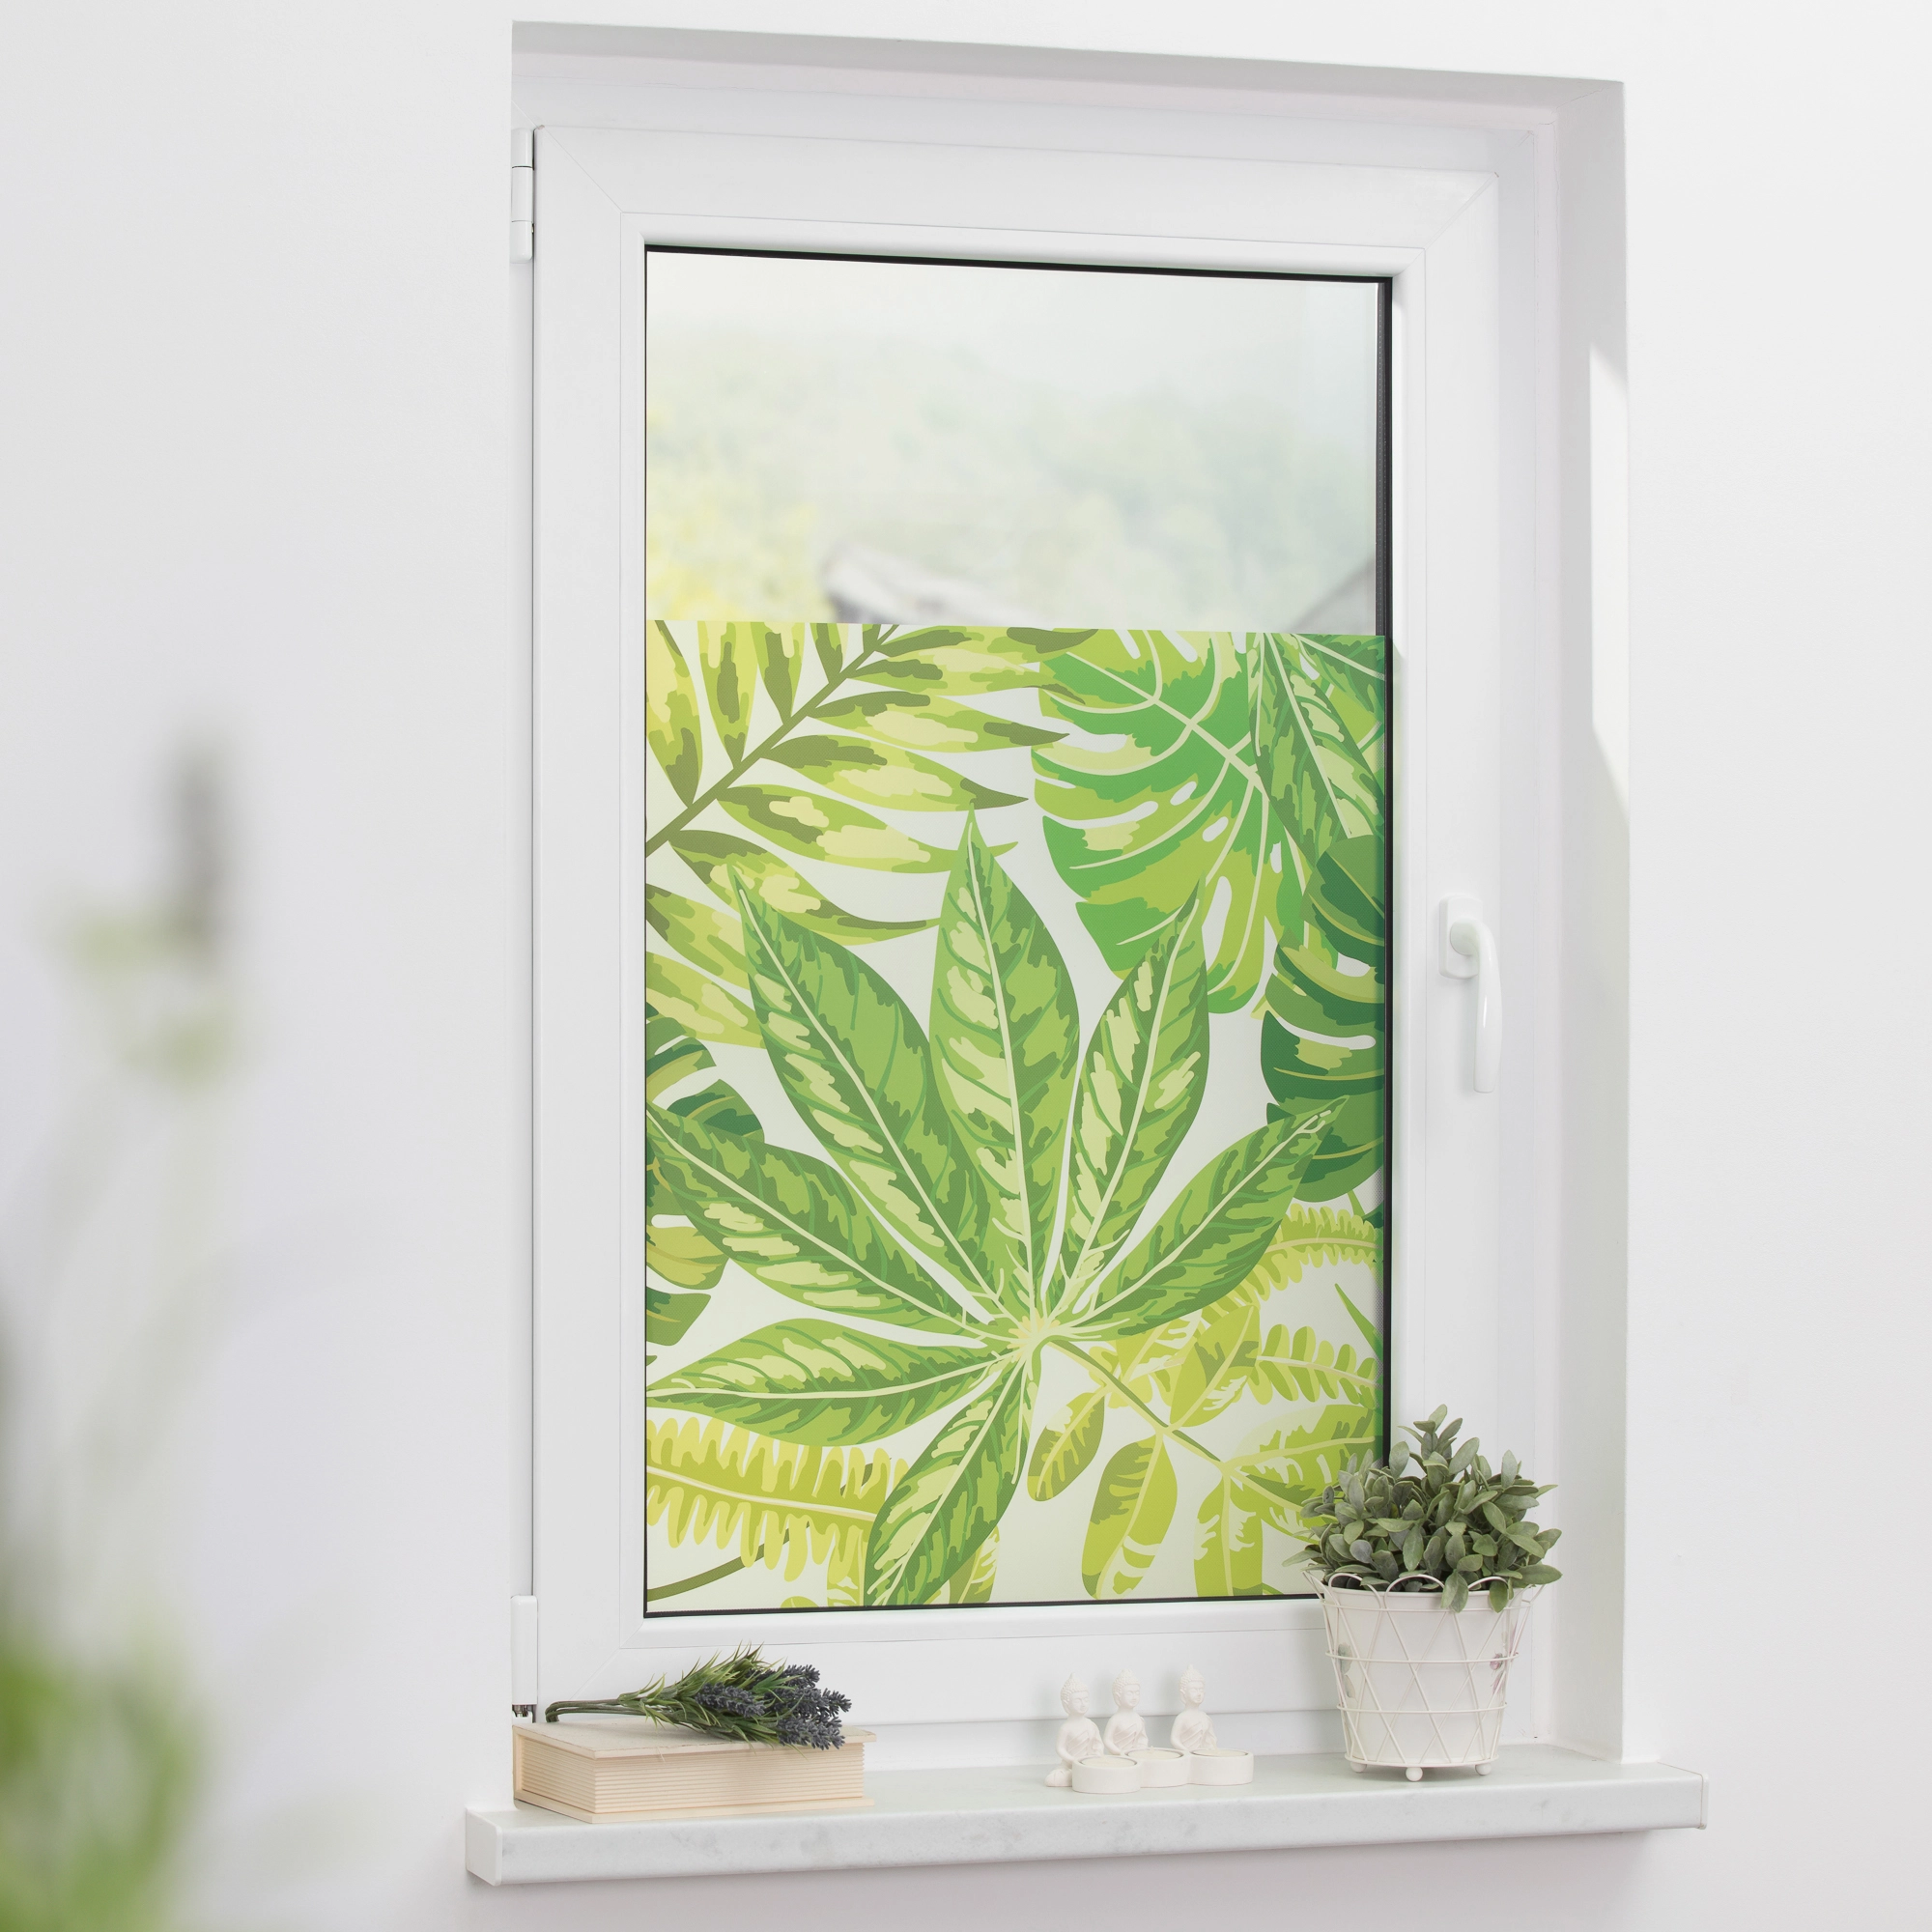 Lichtblick Fensterfolie selbstklebend Sichtschutz Grün kaufen bei mit OBI Blätter